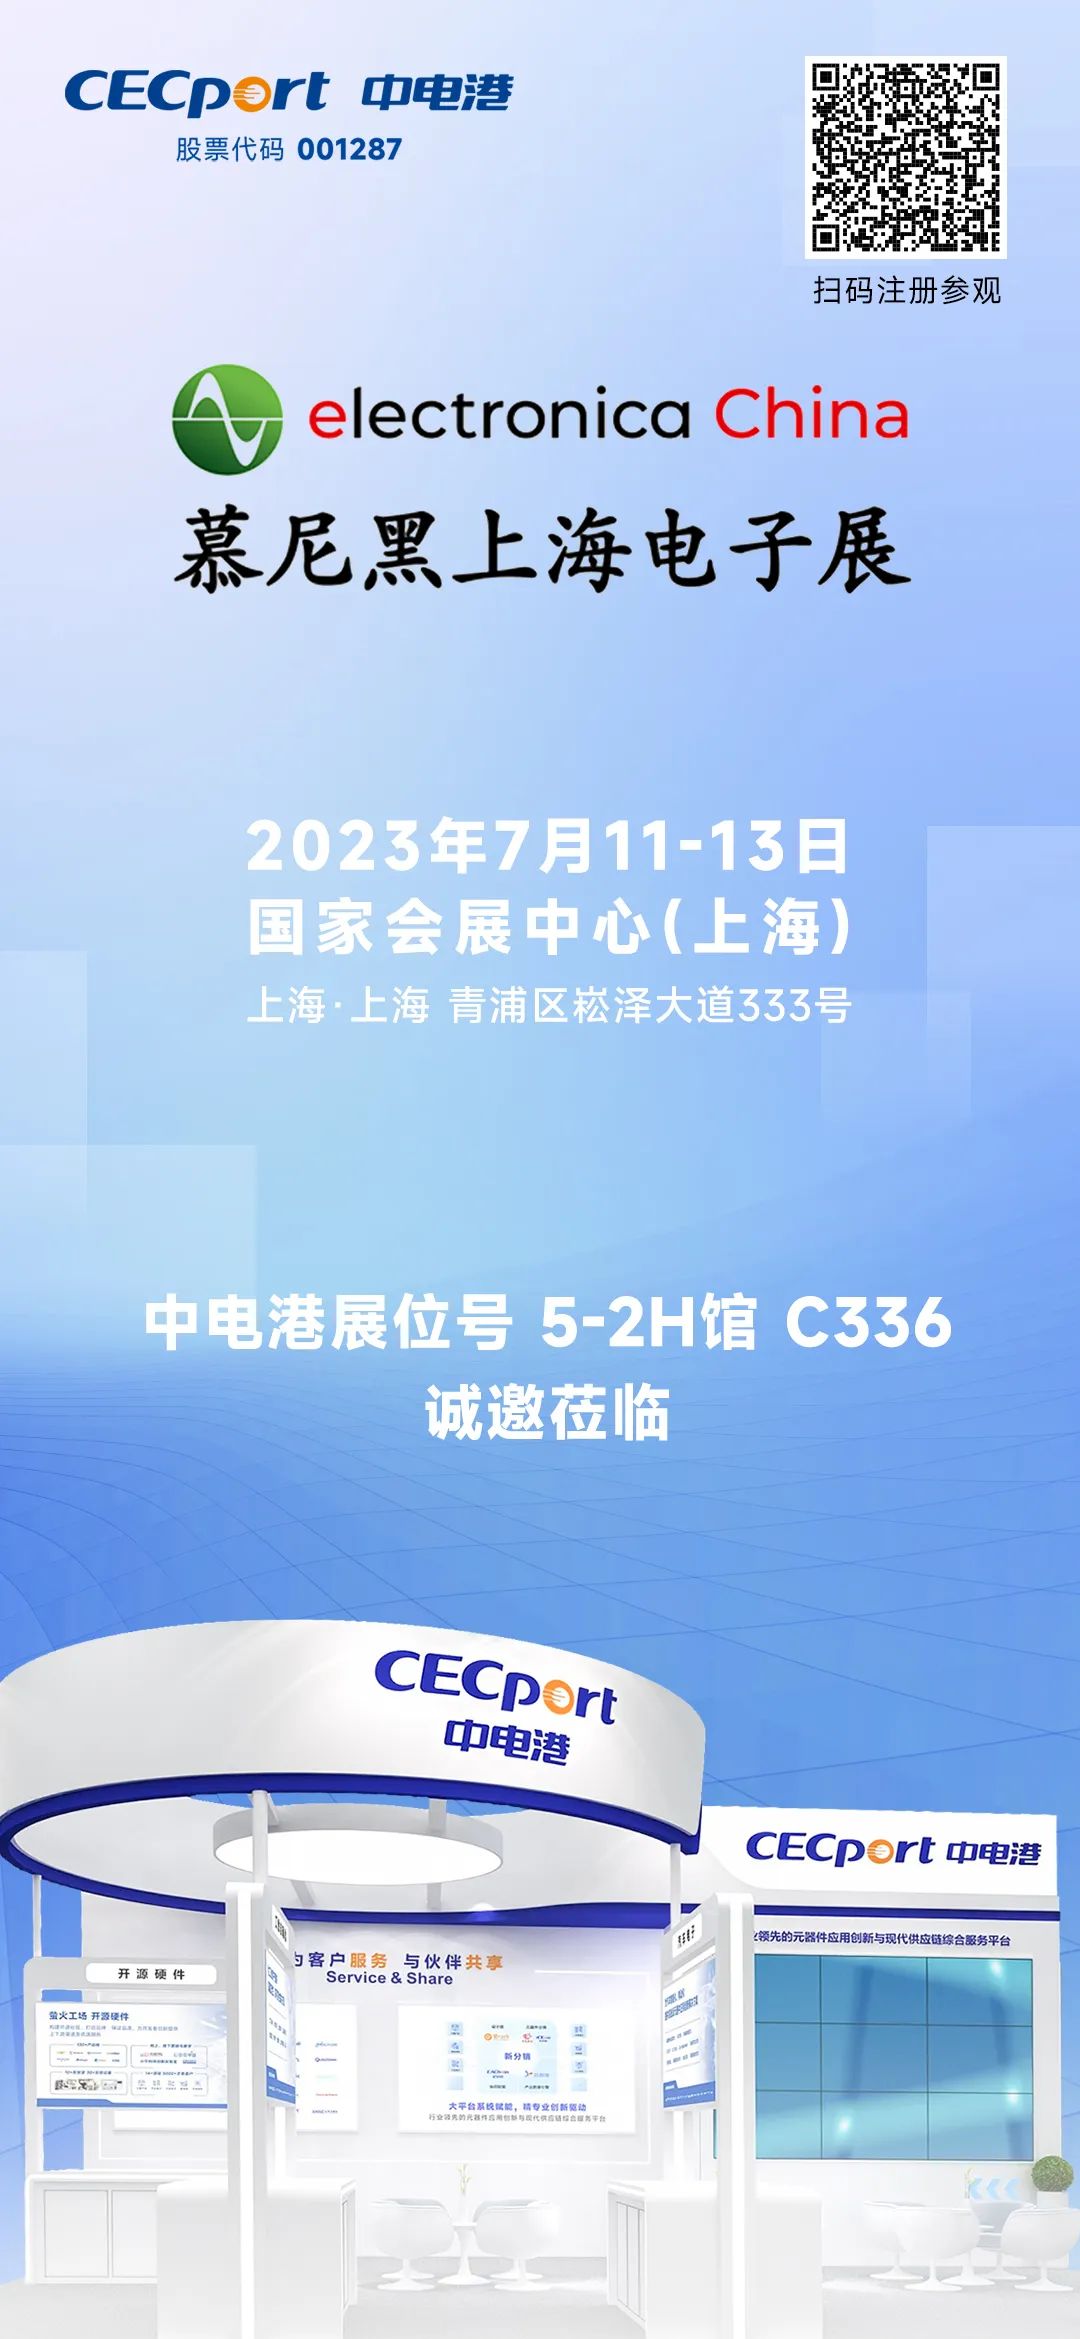 中电港与您相约2023慕尼黑上海电子展